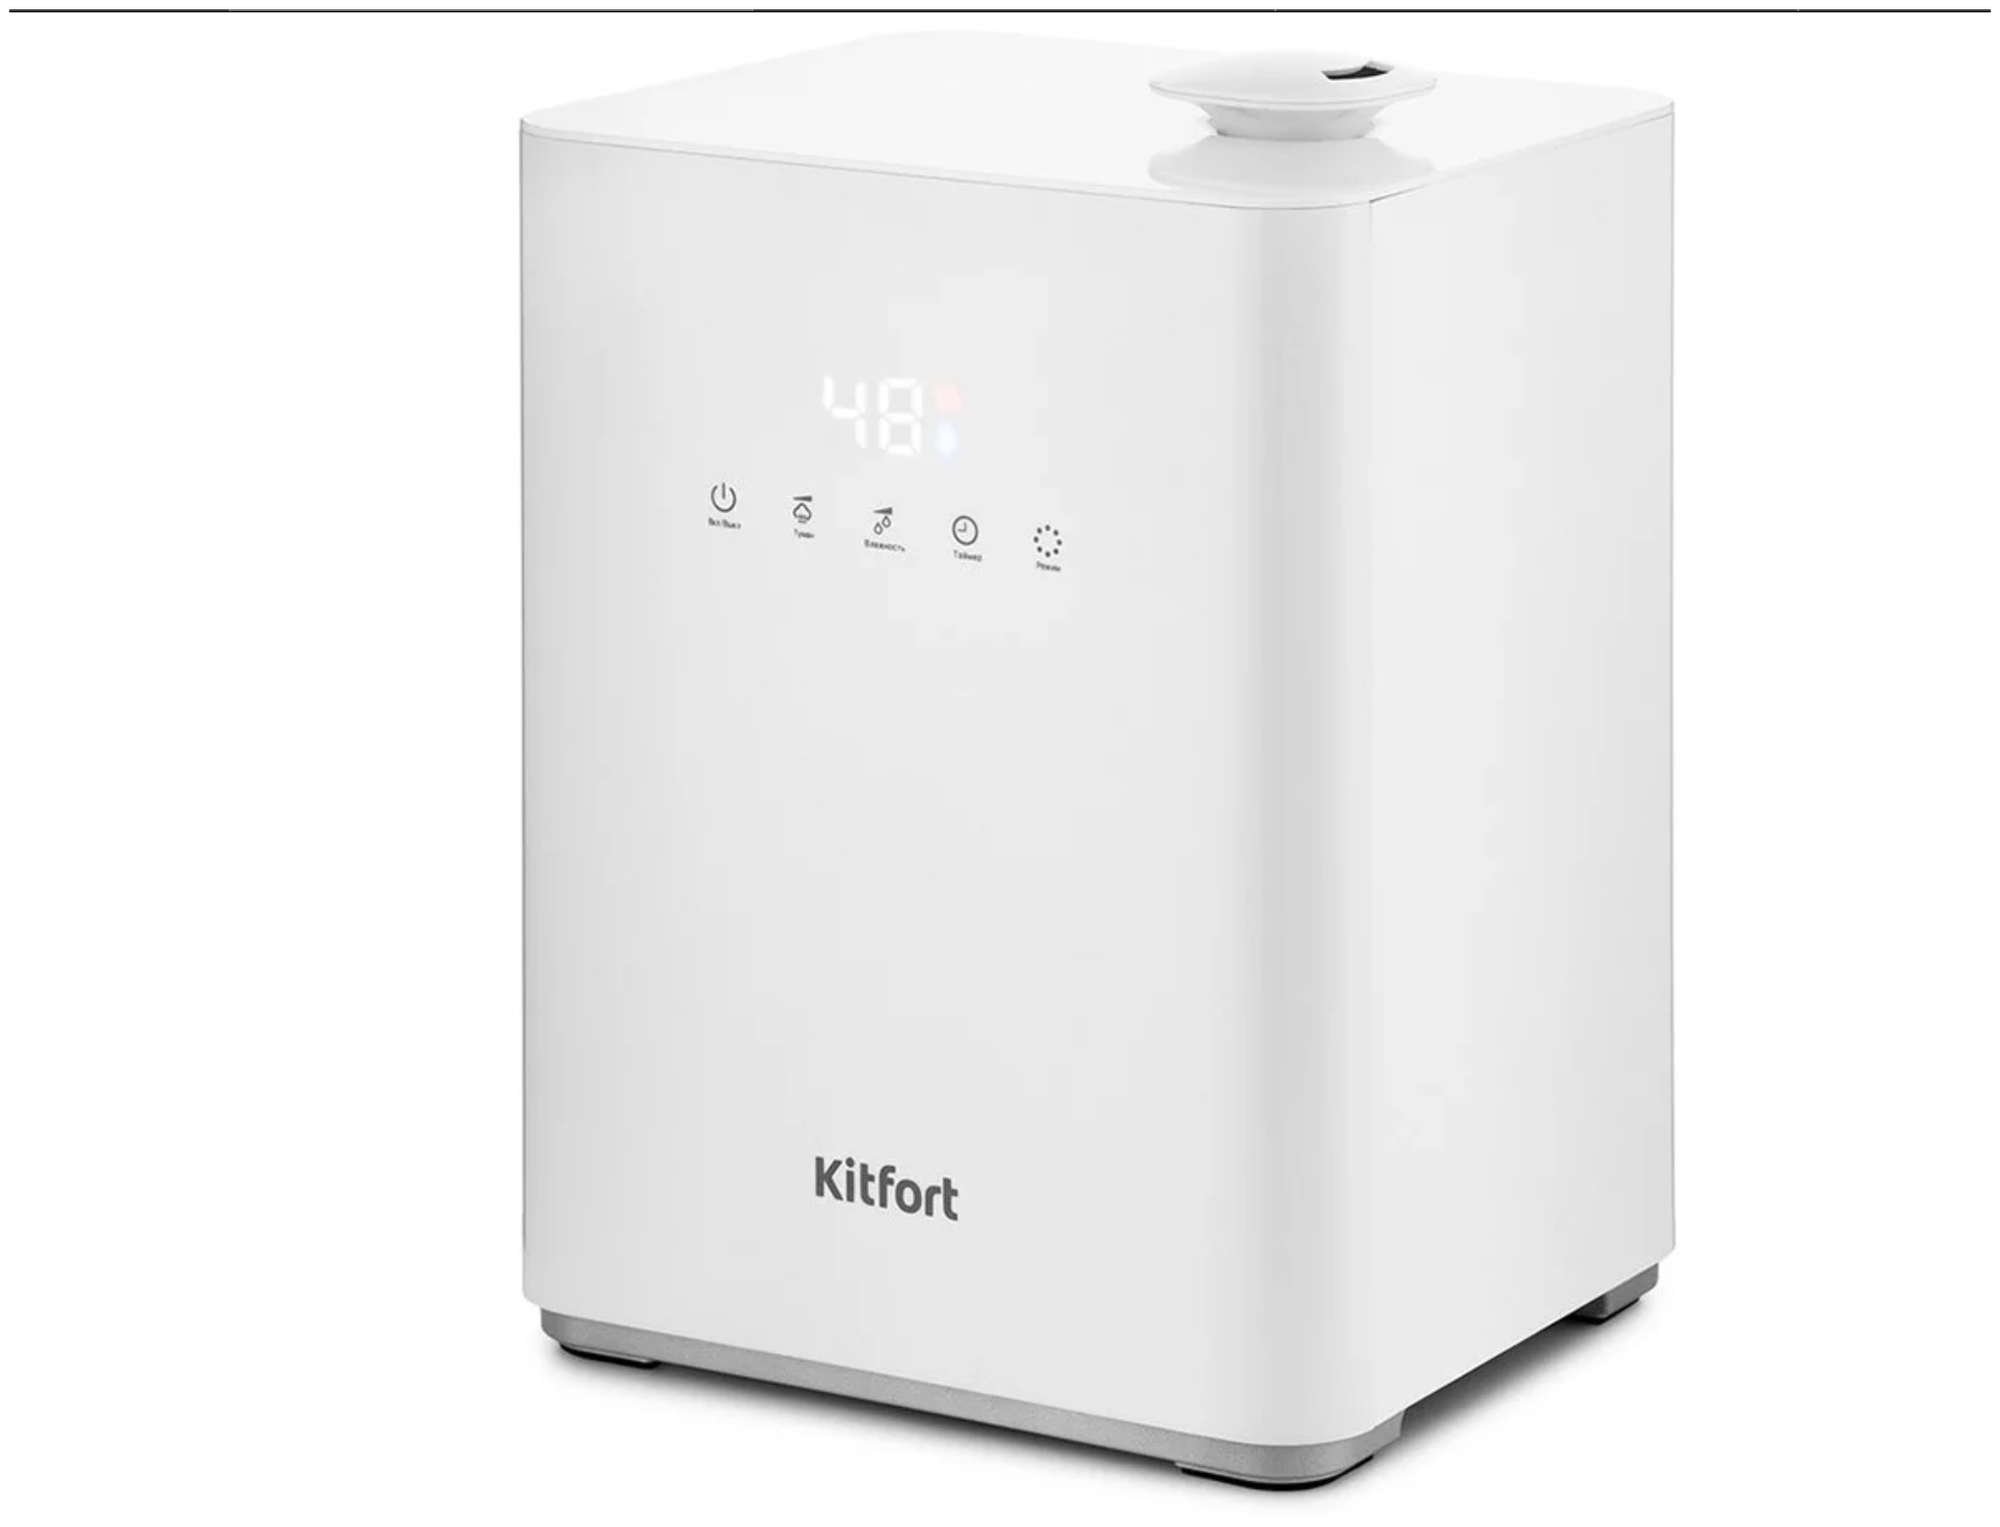 Увлажнитель воздуха Kitfort KT, таймер, гигростат, регулировка скорости вентилятора, дисплей, предварительный нагрев воды